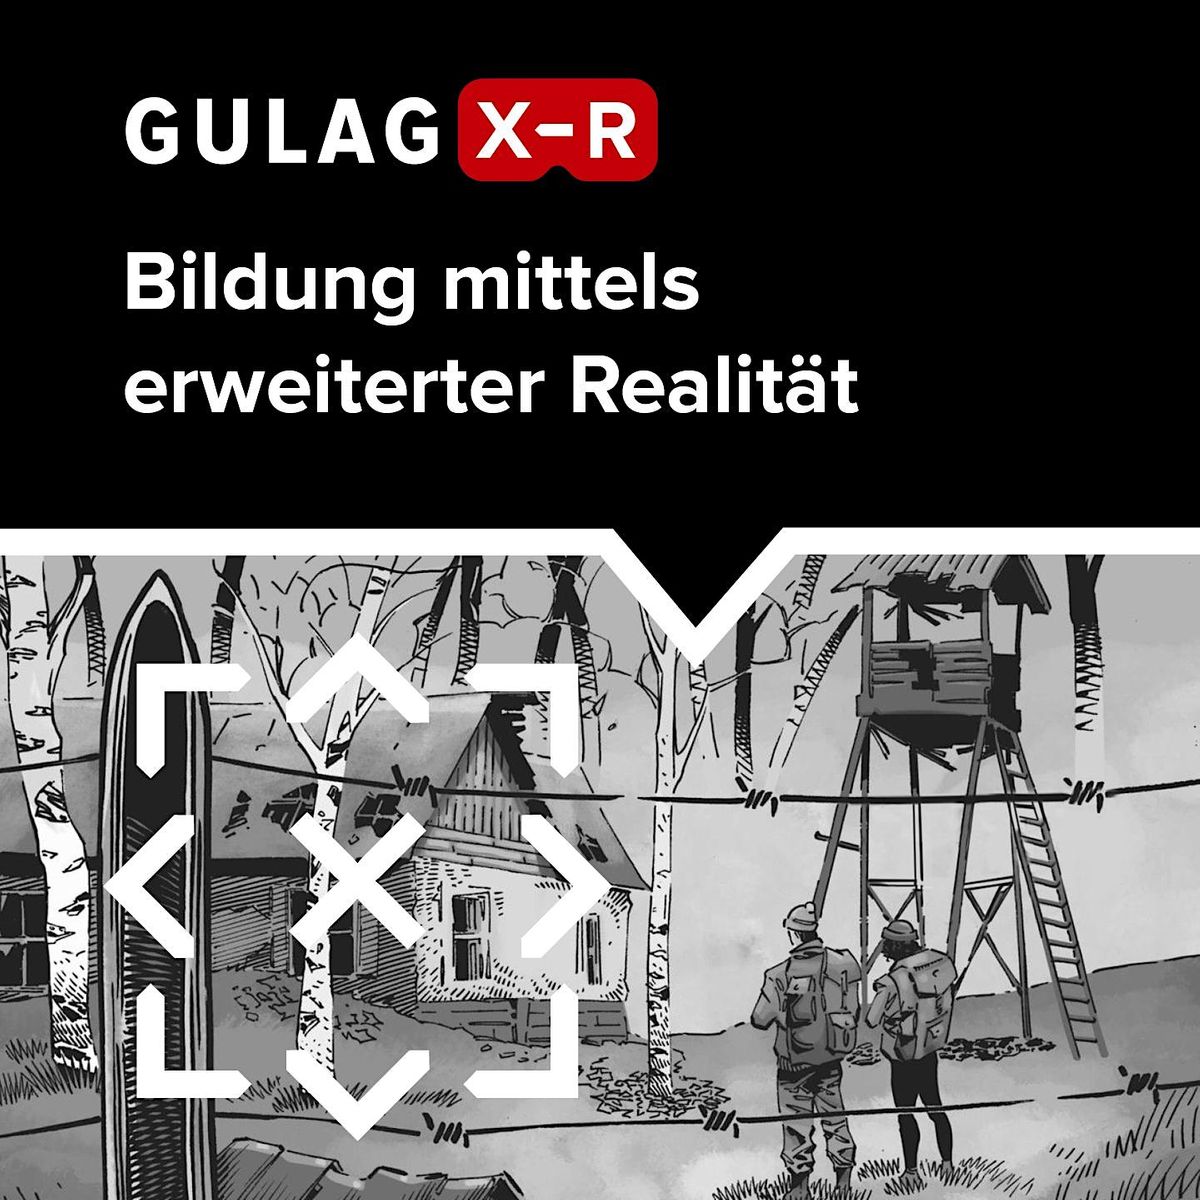 Erweiterte Realit\u00e4t als p\u00e4dagogisches Werkzeug: Gulag XR